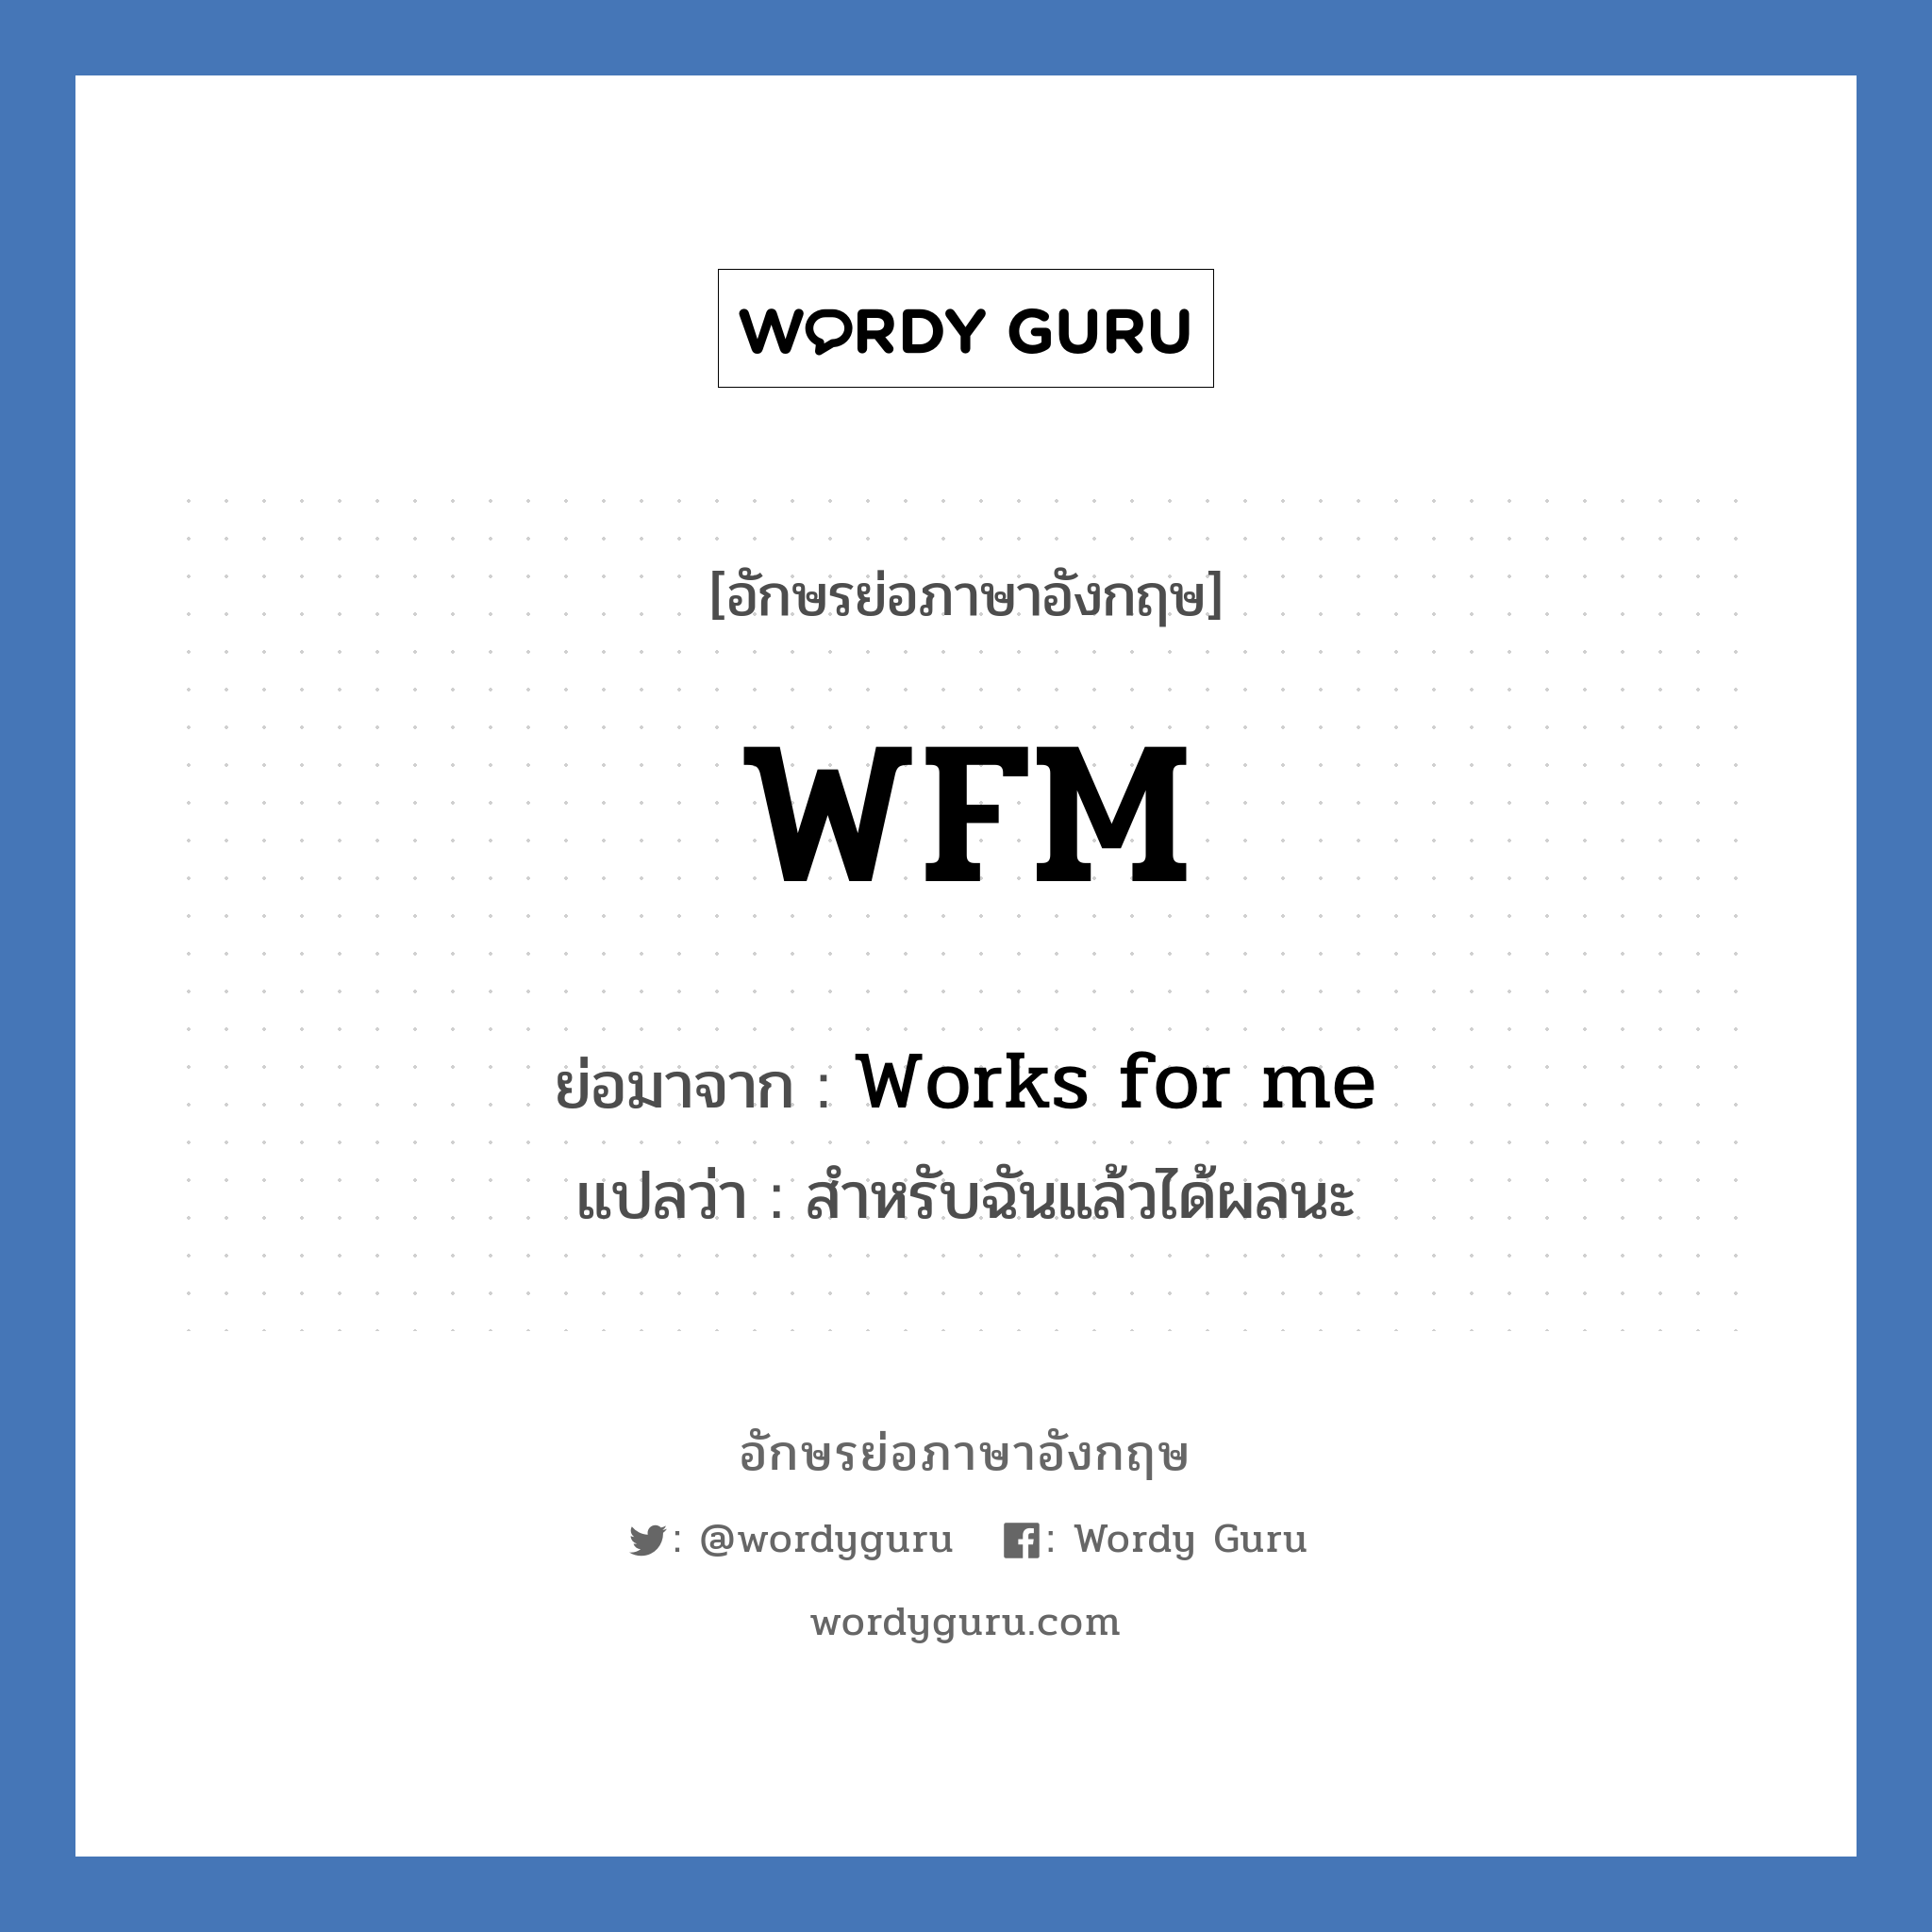 Works for me คำย่อคือ? แปลว่า?, อักษรย่อภาษาอังกฤษ Works for me ย่อมาจาก WFM แปลว่า สำหรับฉันแล้วได้ผลนะ